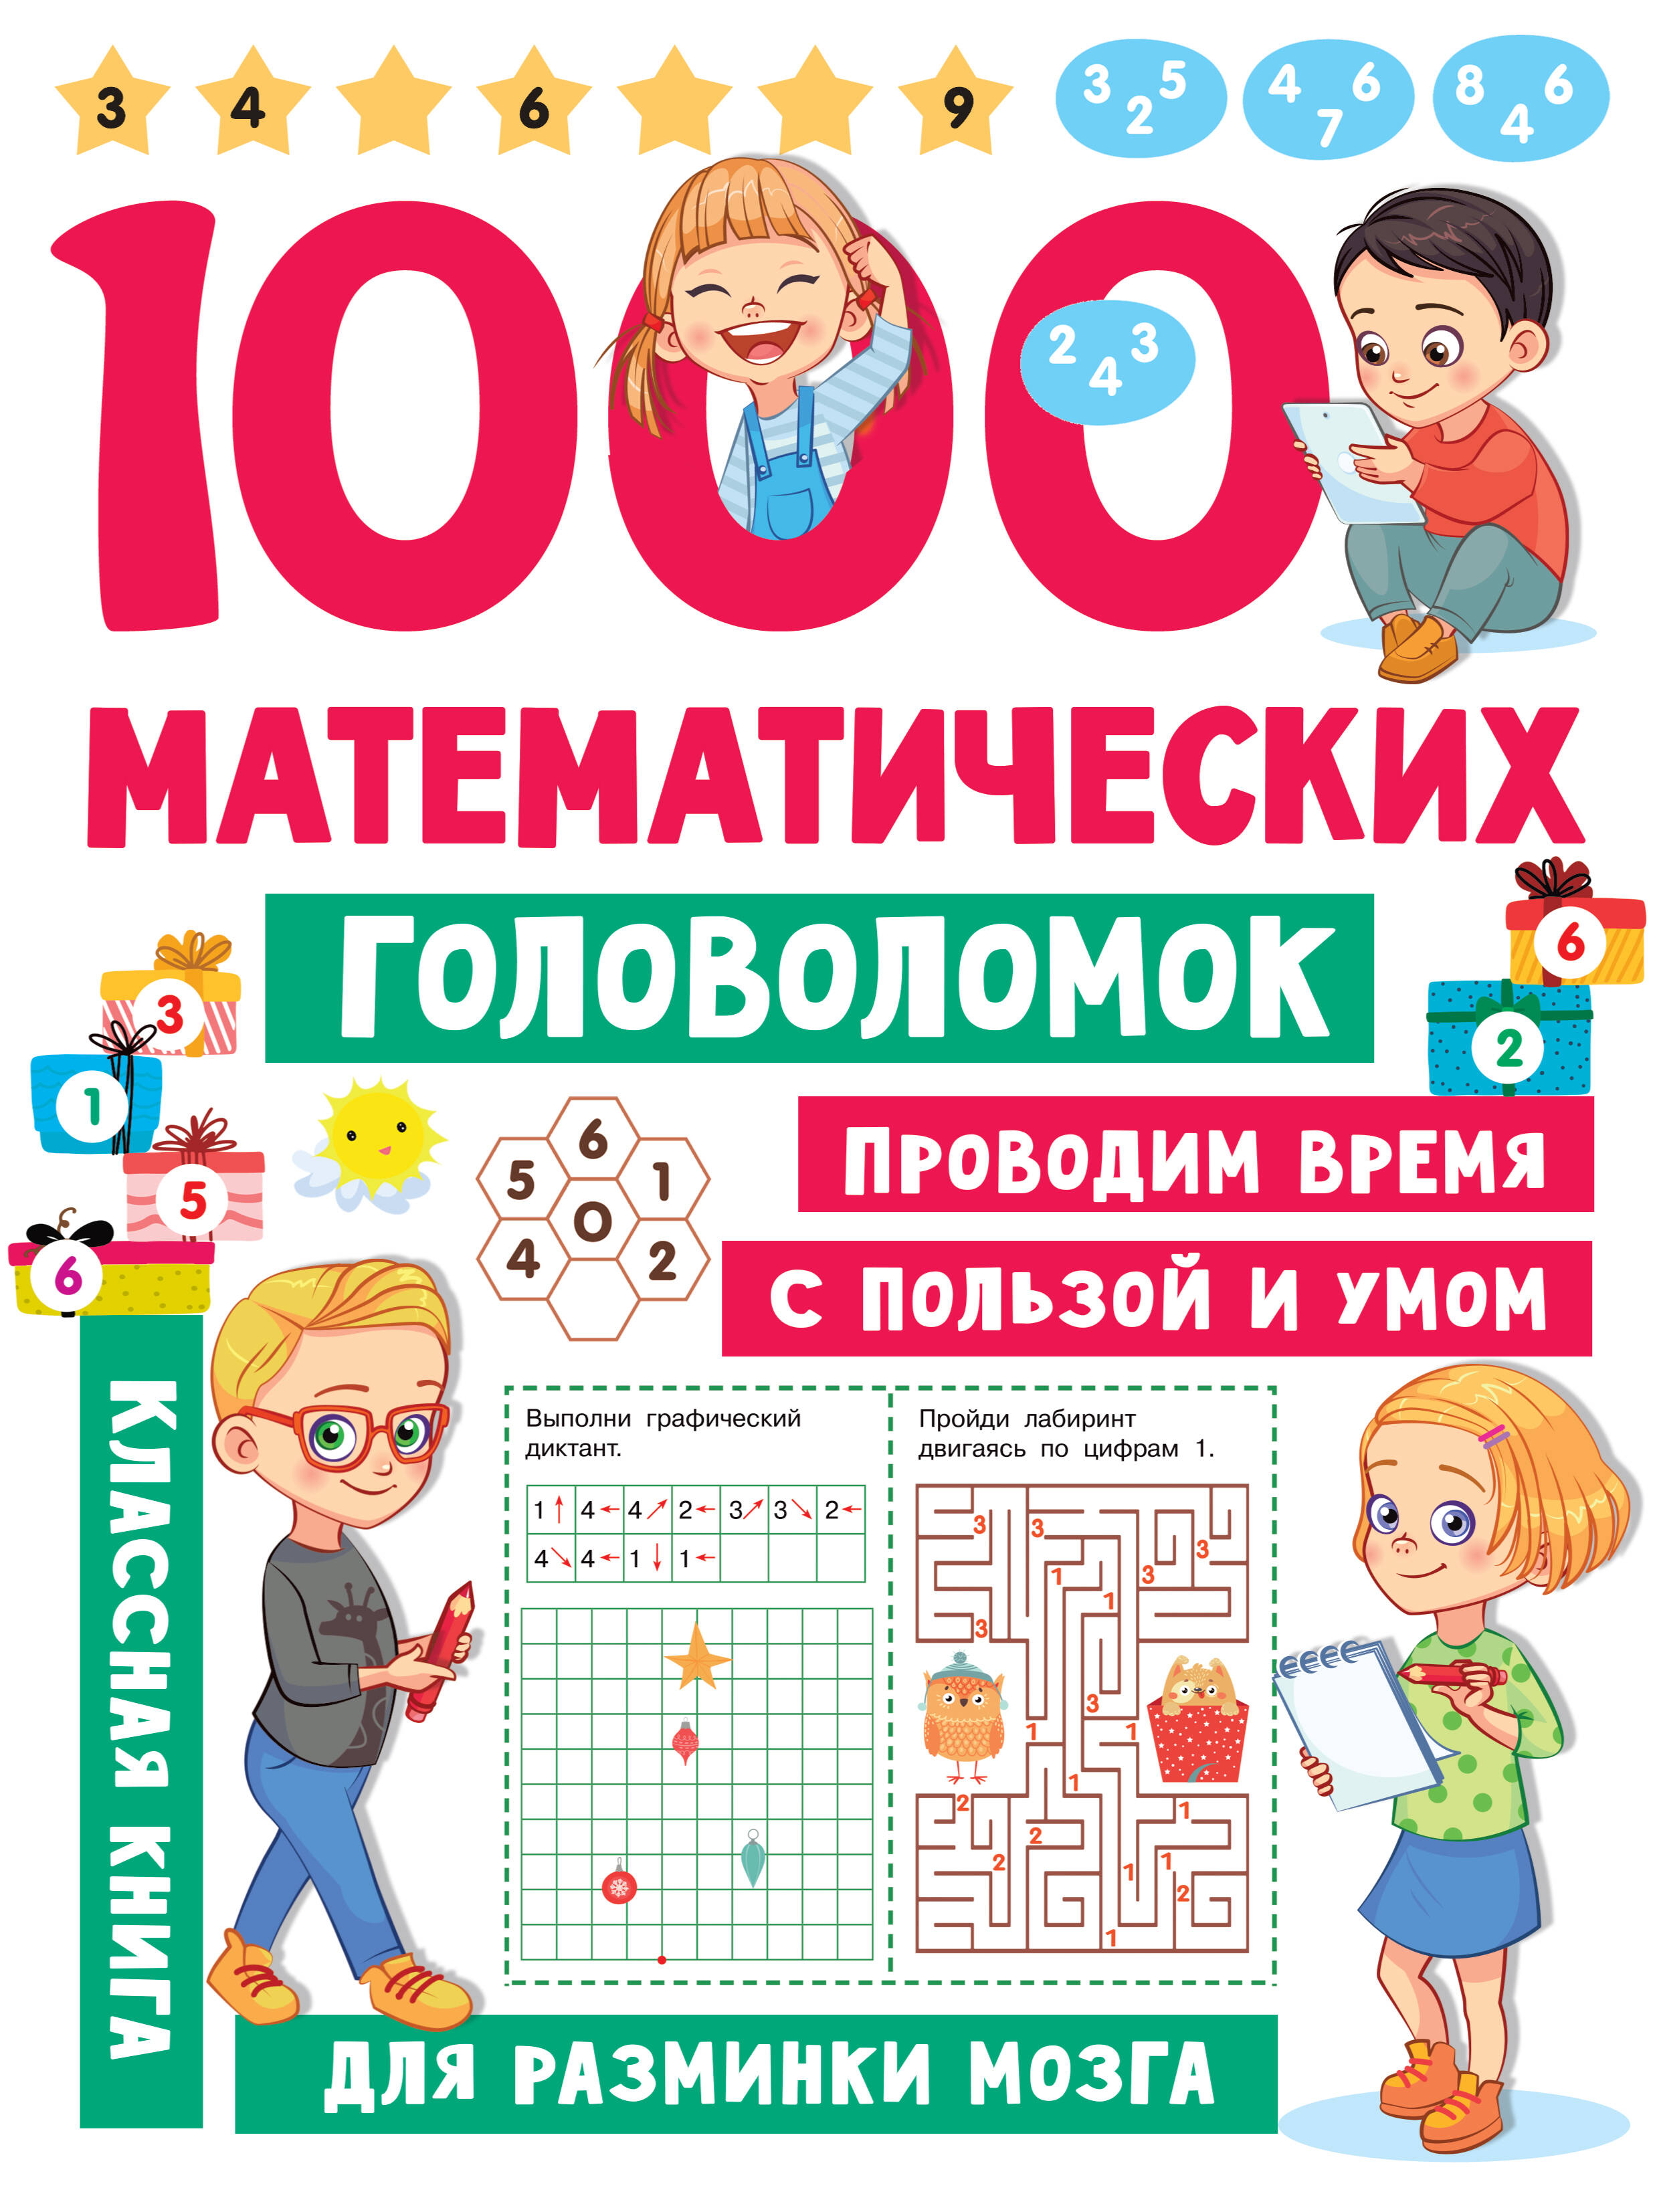 Дмитриева Валентина Геннадьевна 1000 математических головоломок дмитриева валентина геннадьевна 1000 головоломок для малышей